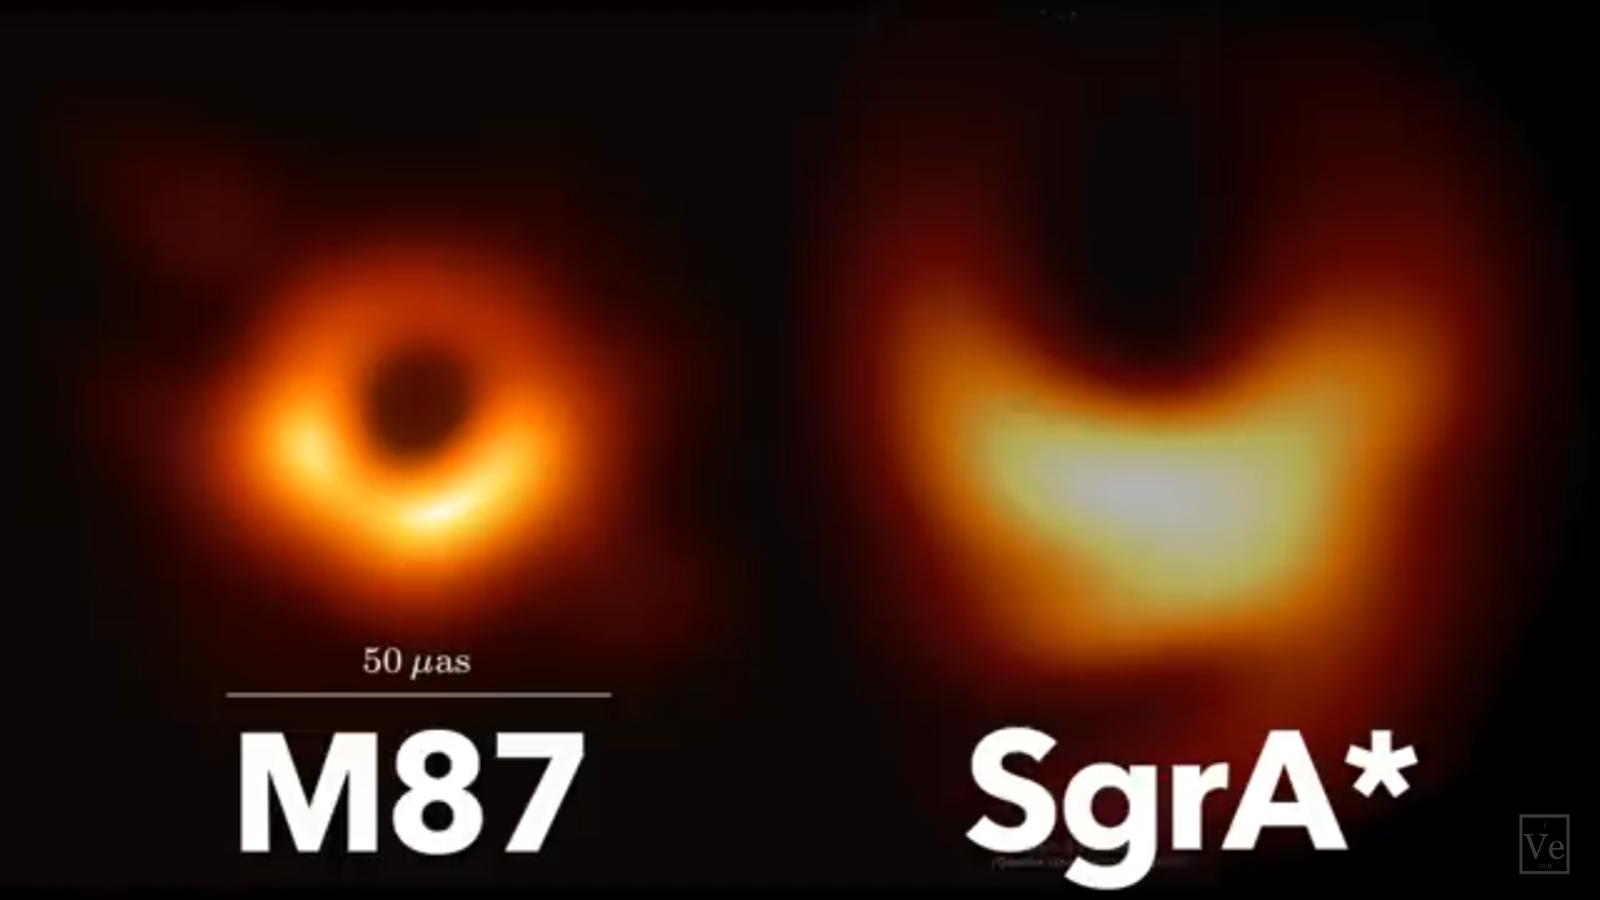 Comparación de los agujeros negros M87 y Sgr A*